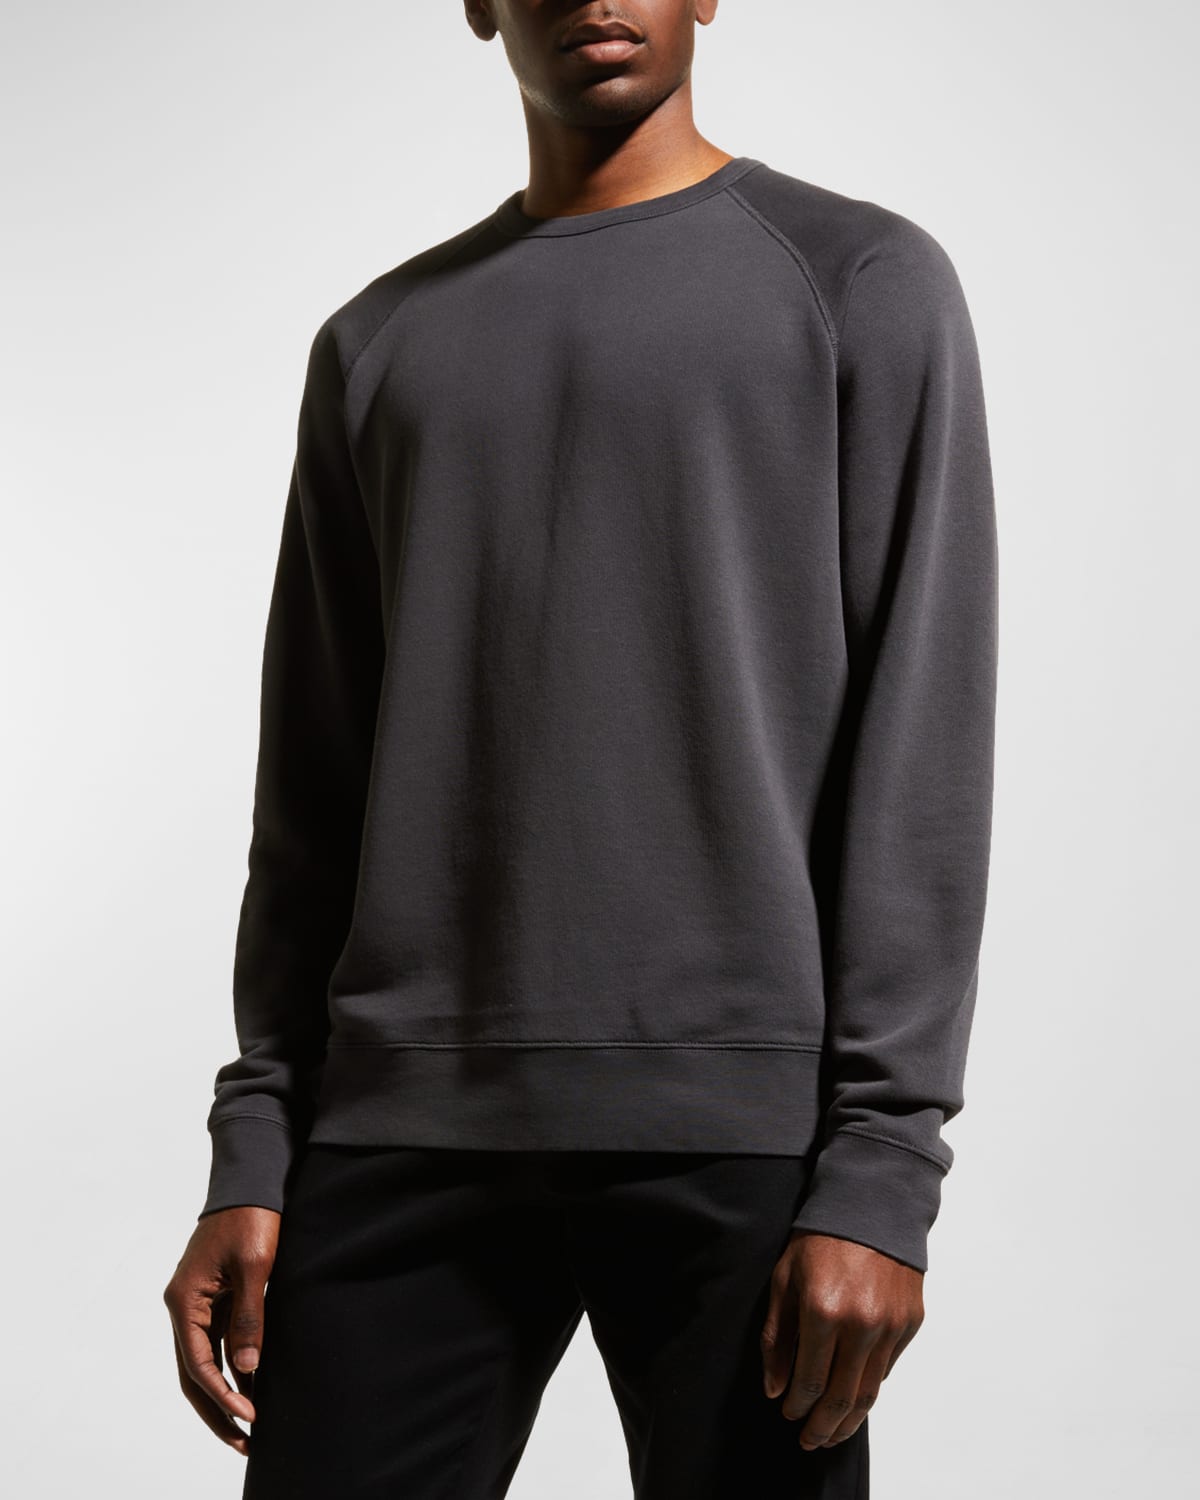 Men's Garment-Dyed Raglan Sweatshirt